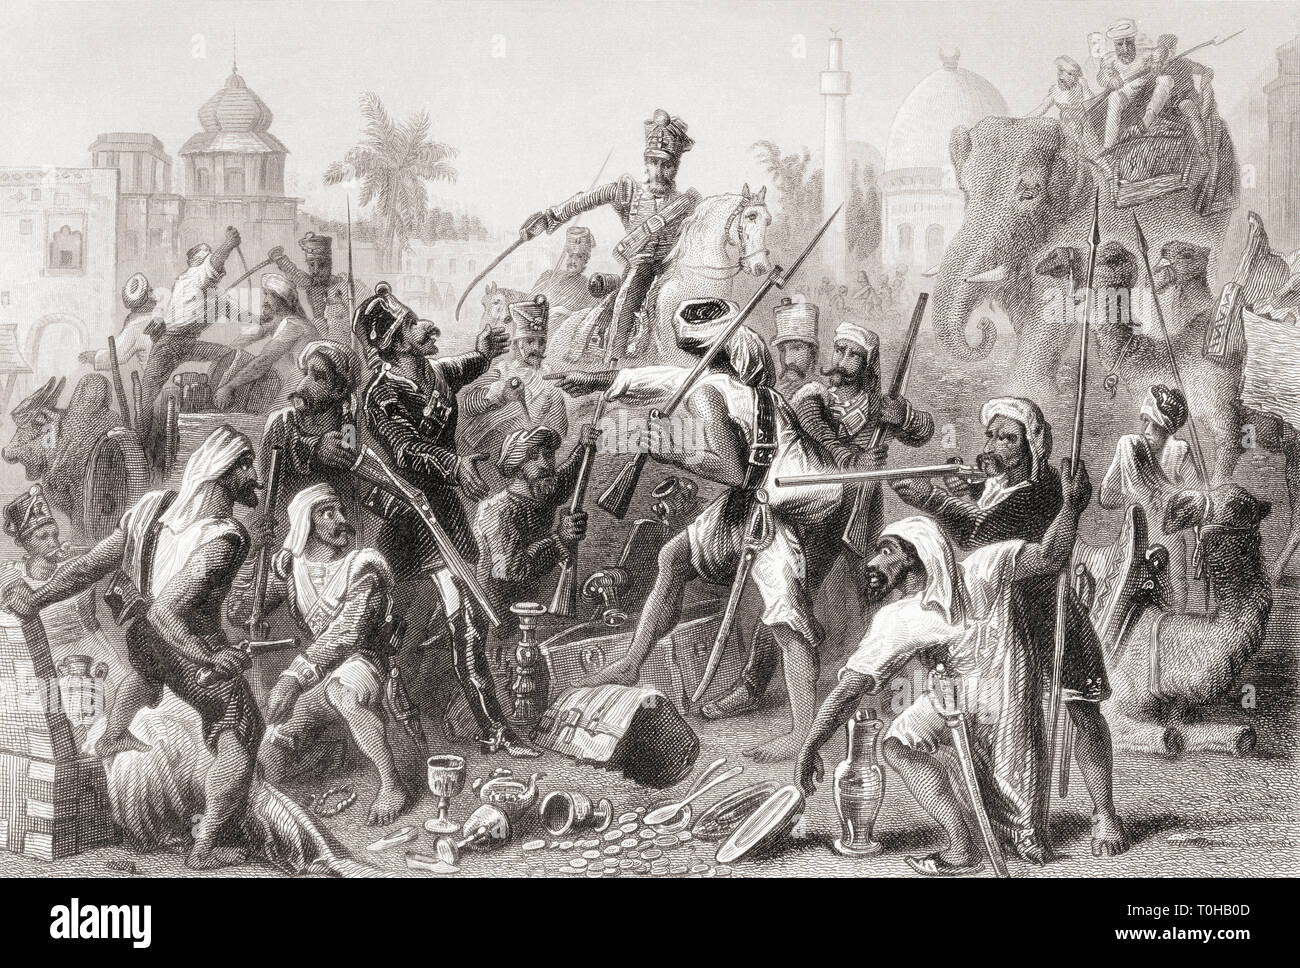 Aufrührende Sepoy-Verderb, indische Meuterei, Sepoy-Meuterei, indische Rebellion, 1857, Indien, Asien, alter Jahrgang 1800s Gravur Stockfoto